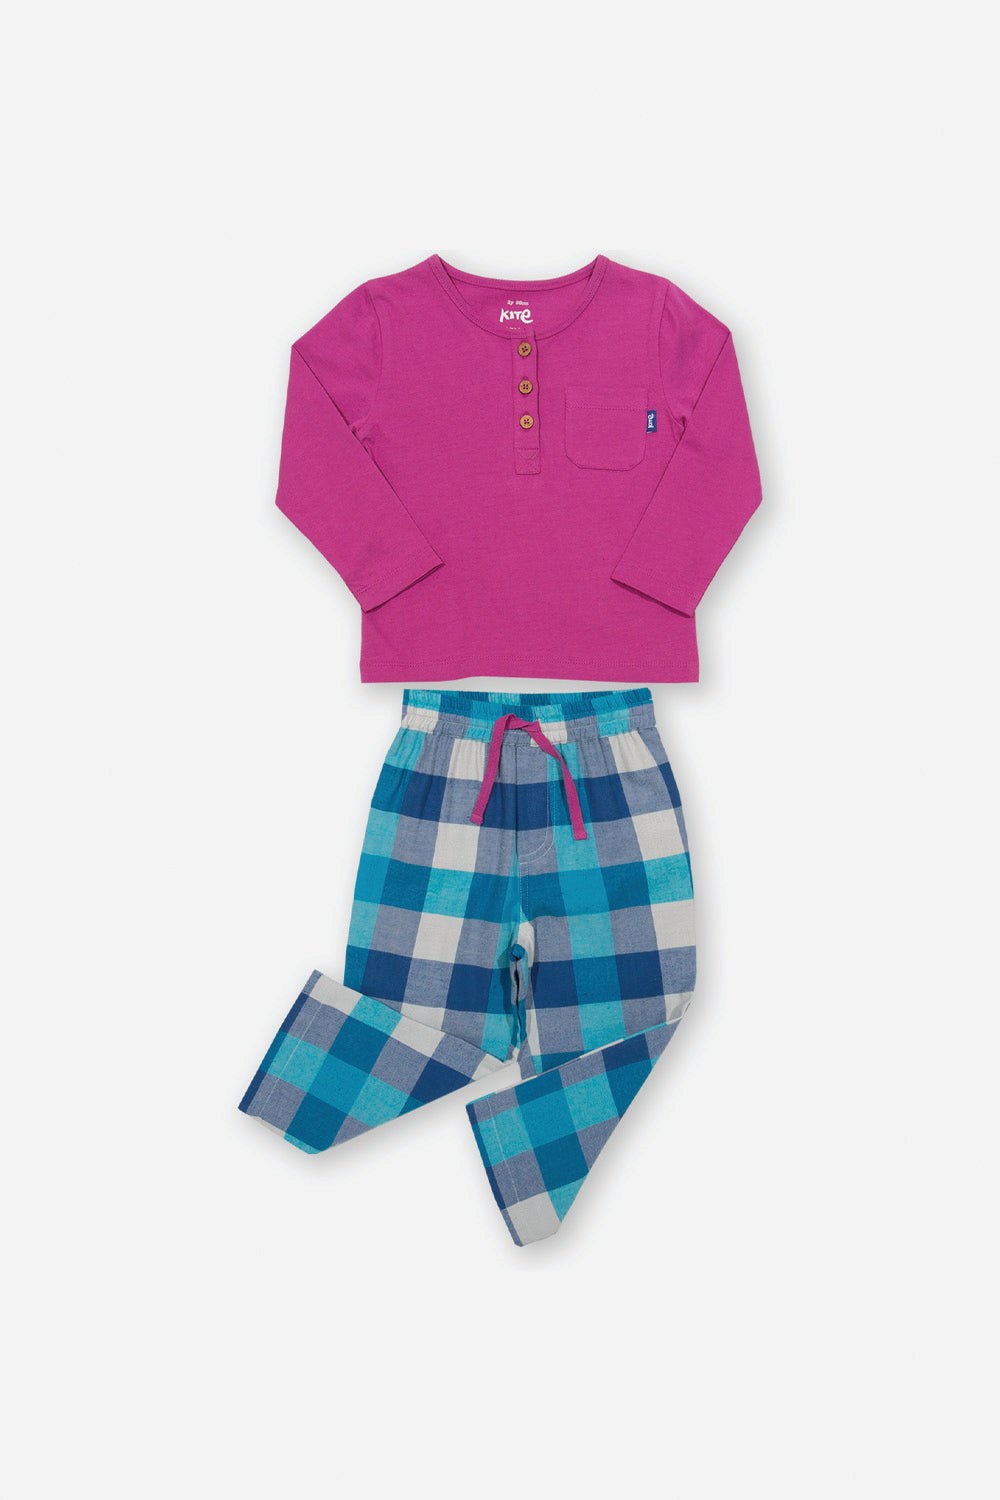 Cranborne Baby/Kids Pyjamas -